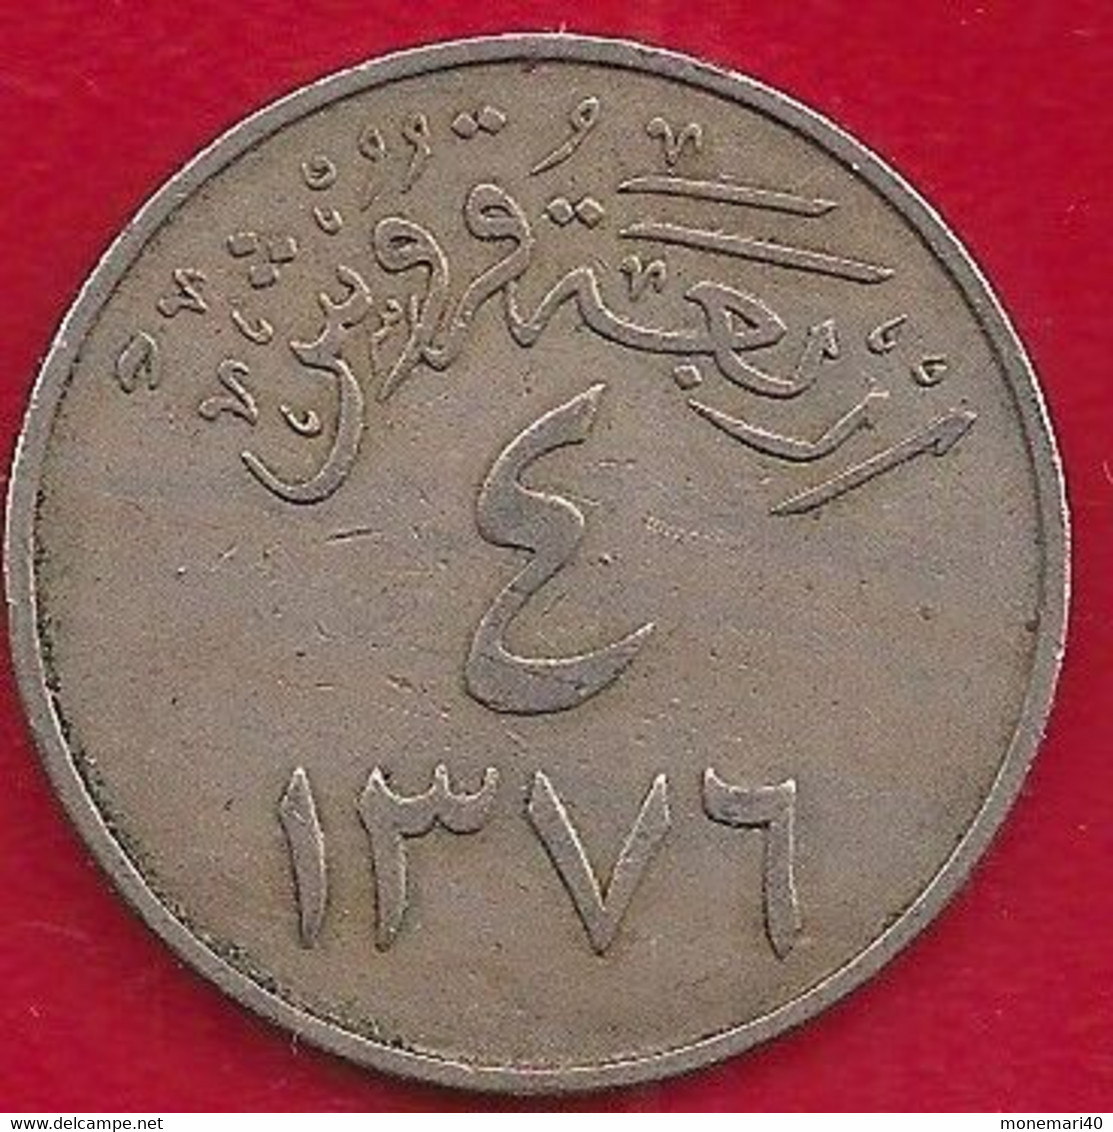 ARABIE SAOUDITE 4 GHIRSH - 1956 - Saudi Arabia